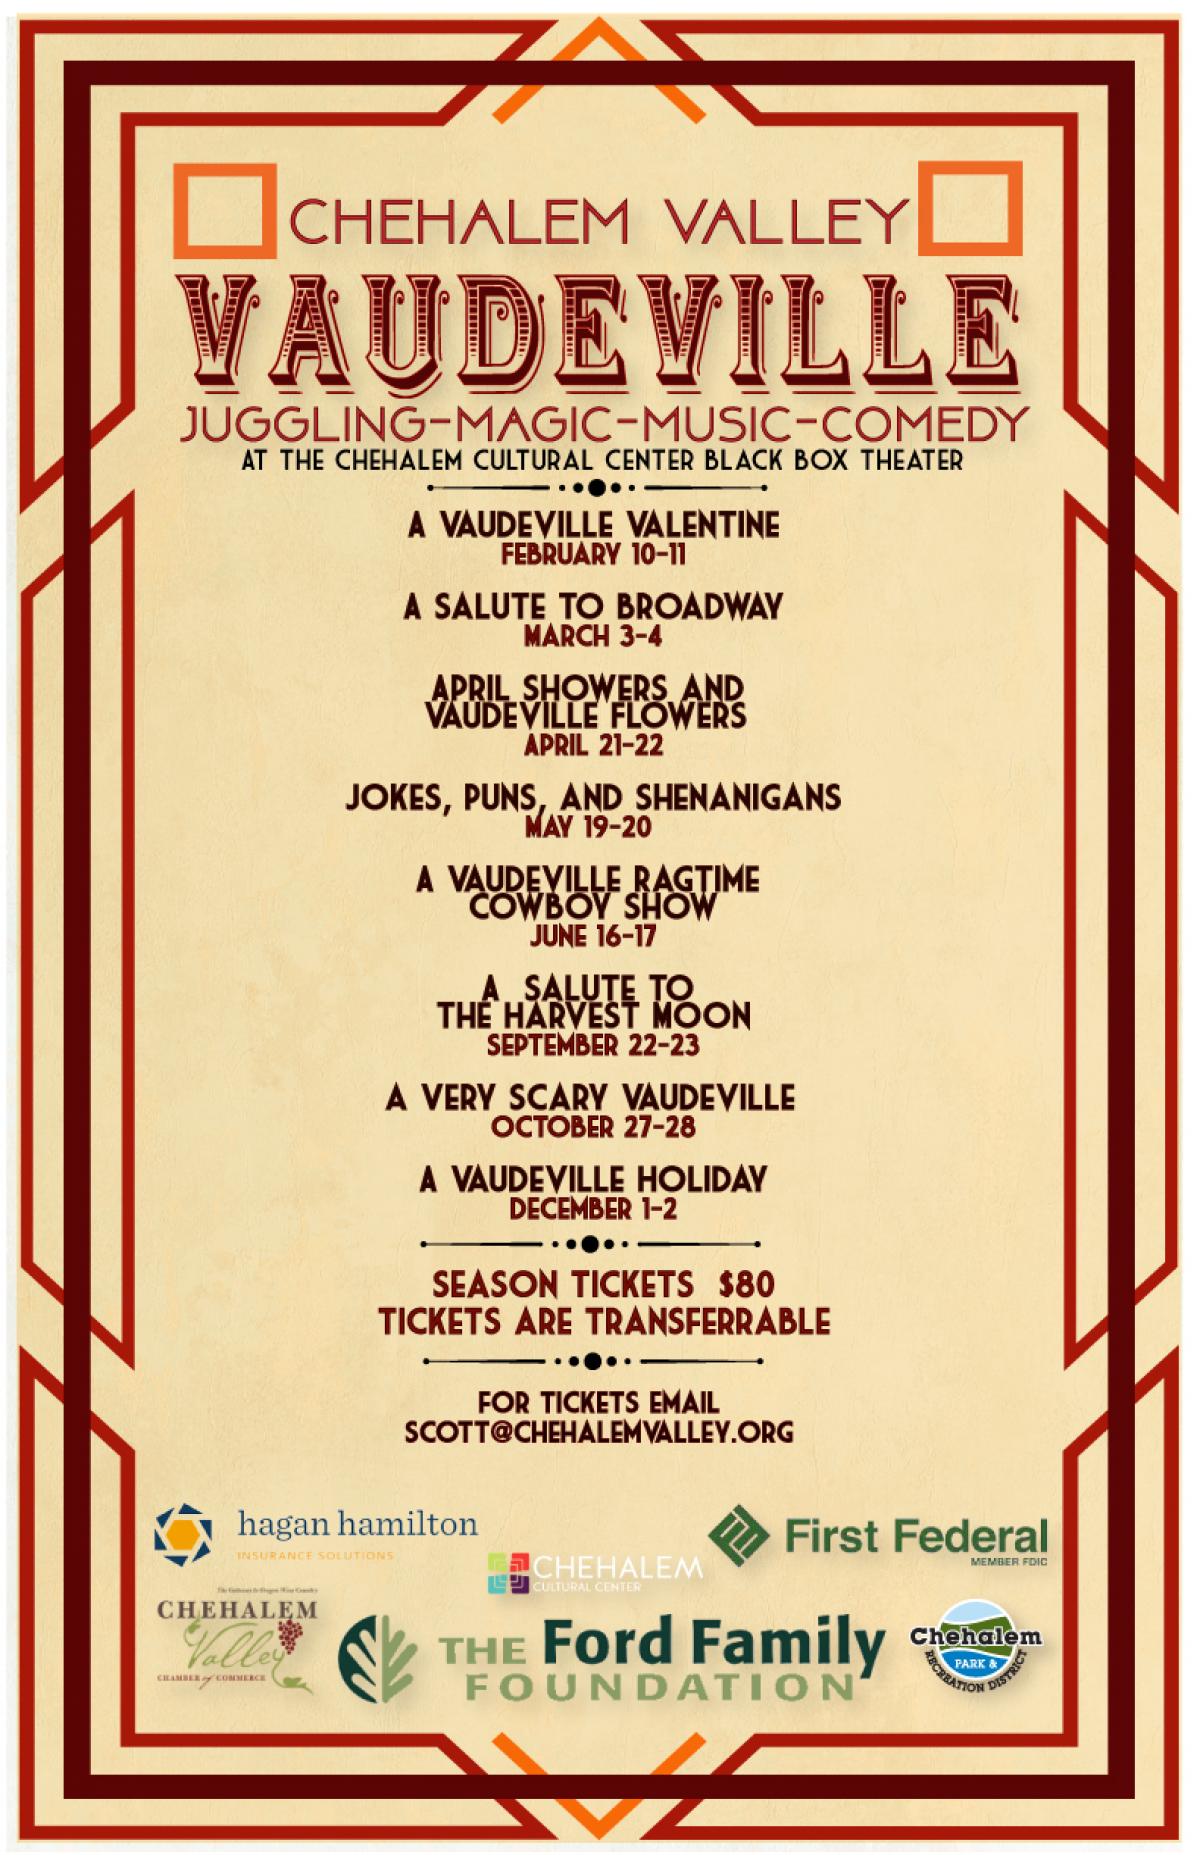 Vaudeville dates